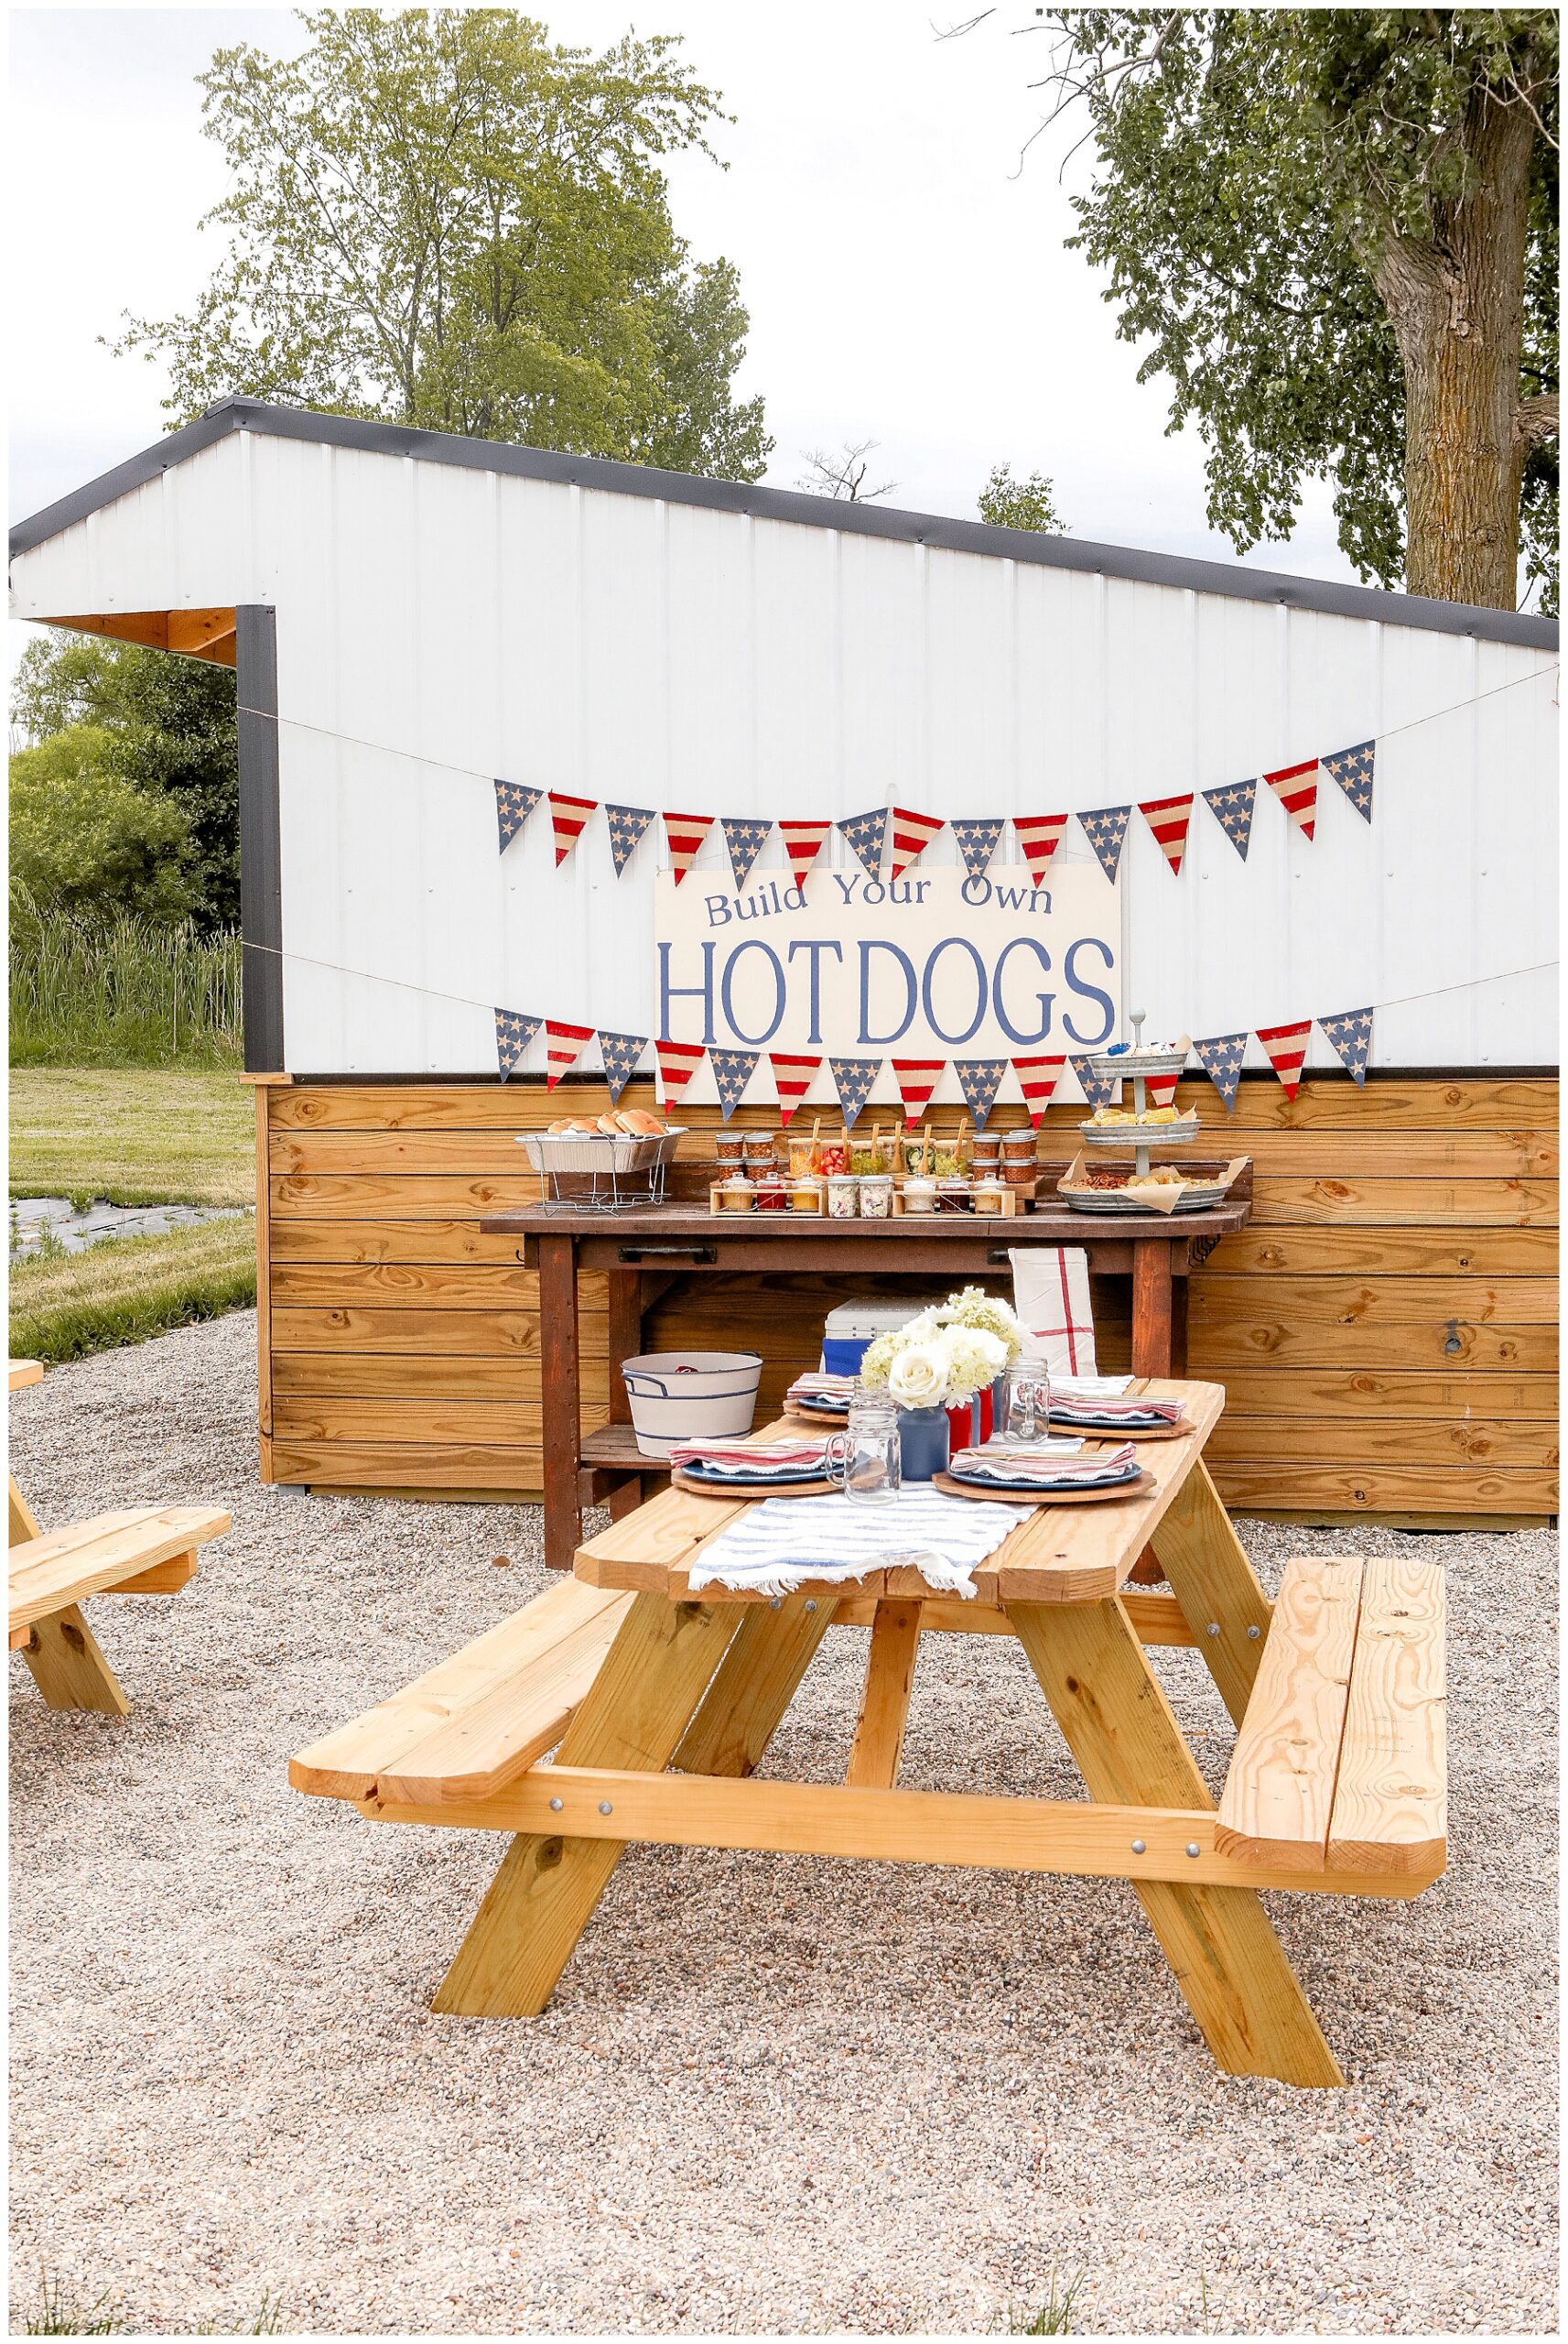 Hot Dog Bar